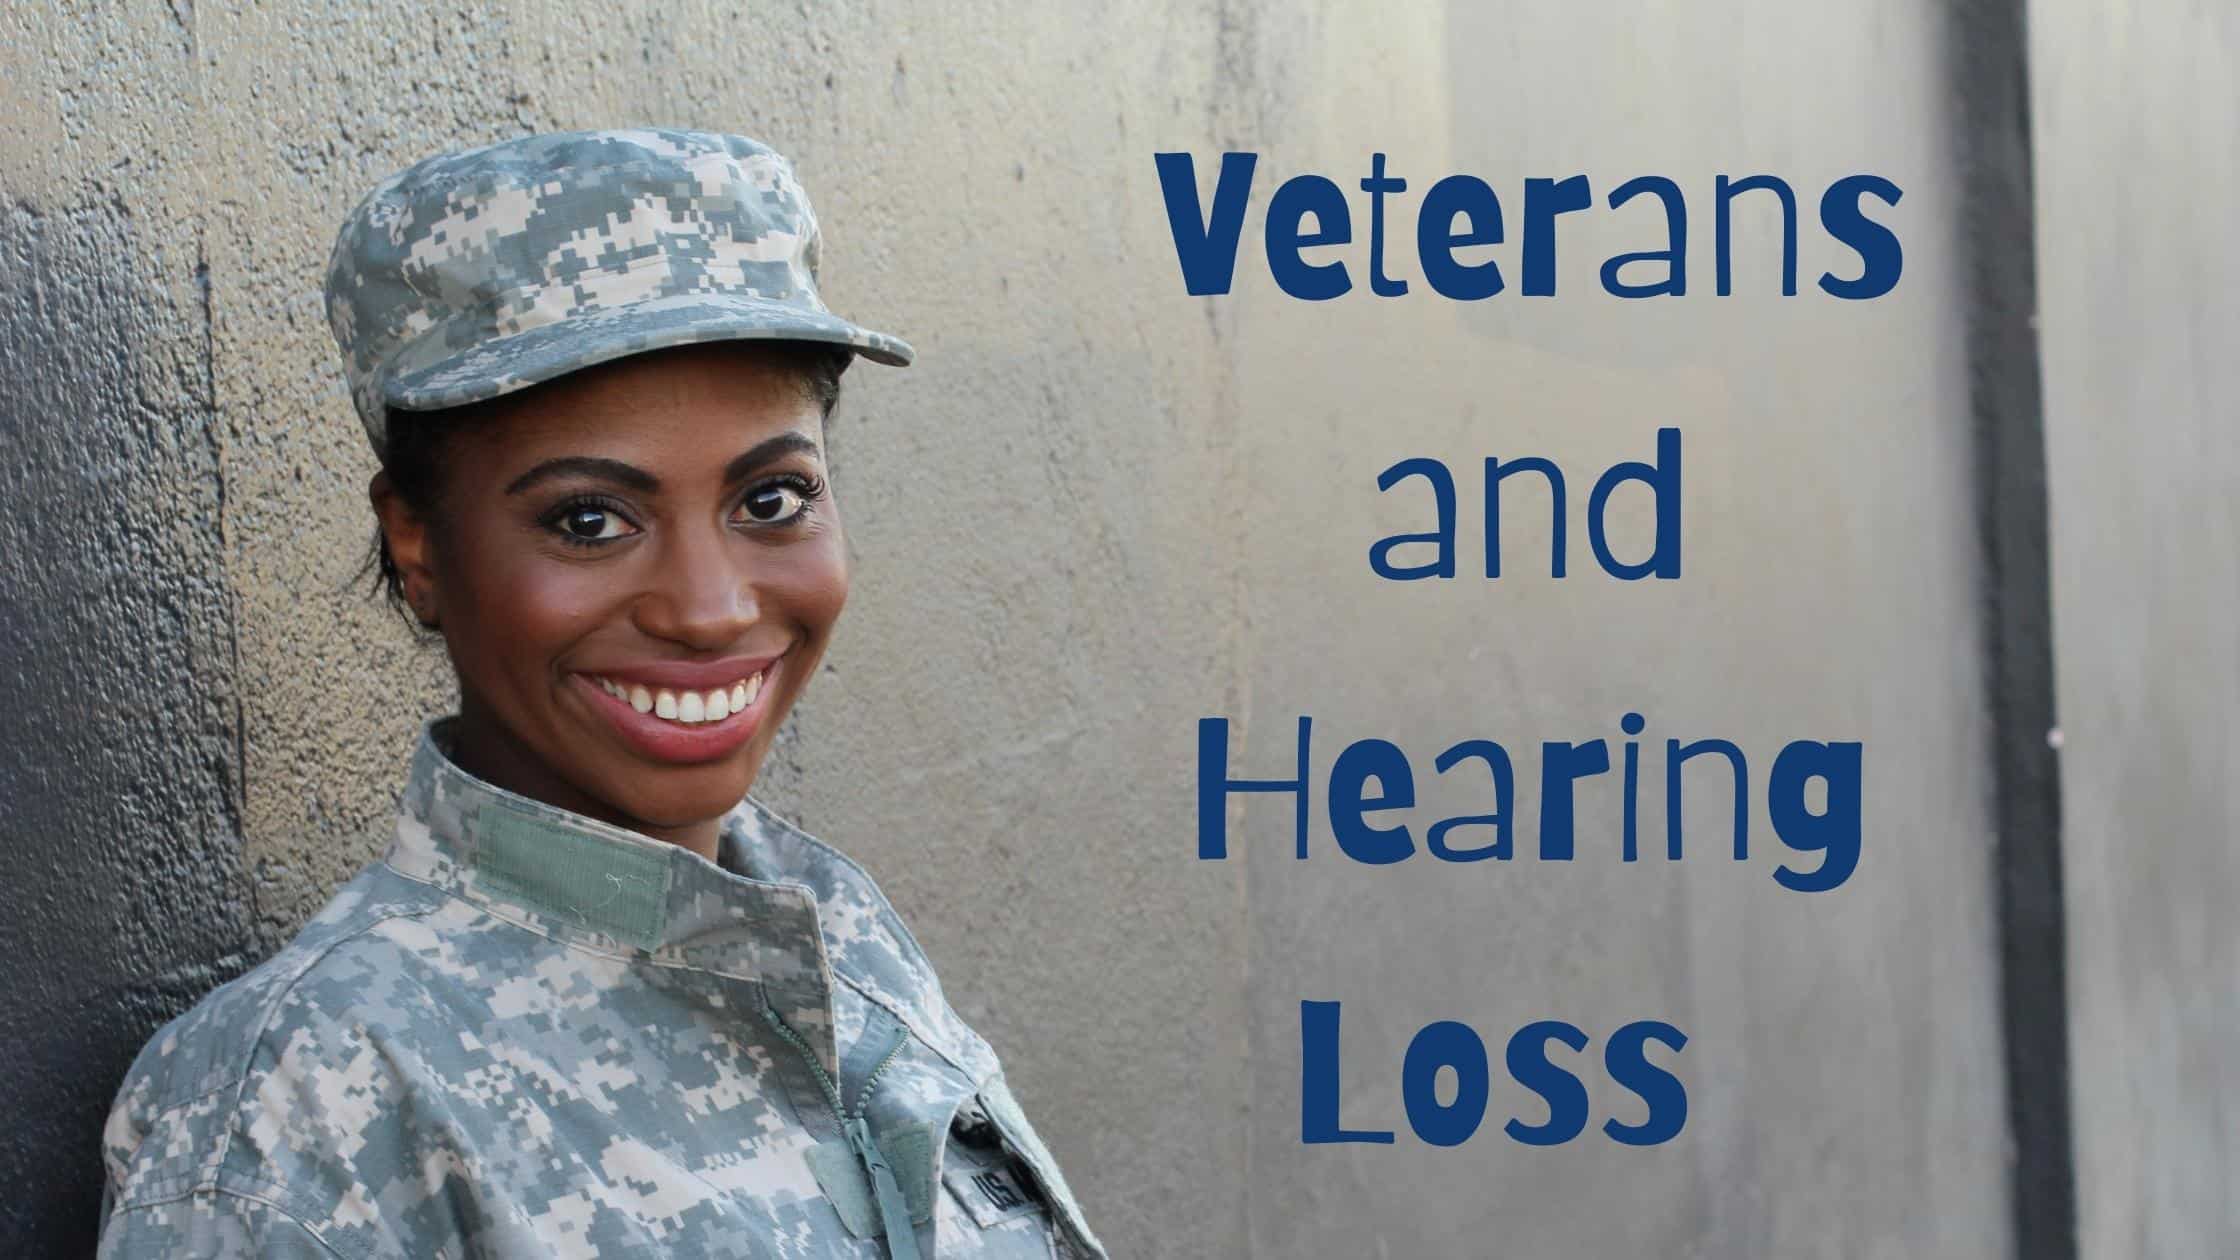 Veterans and Hearing Loss